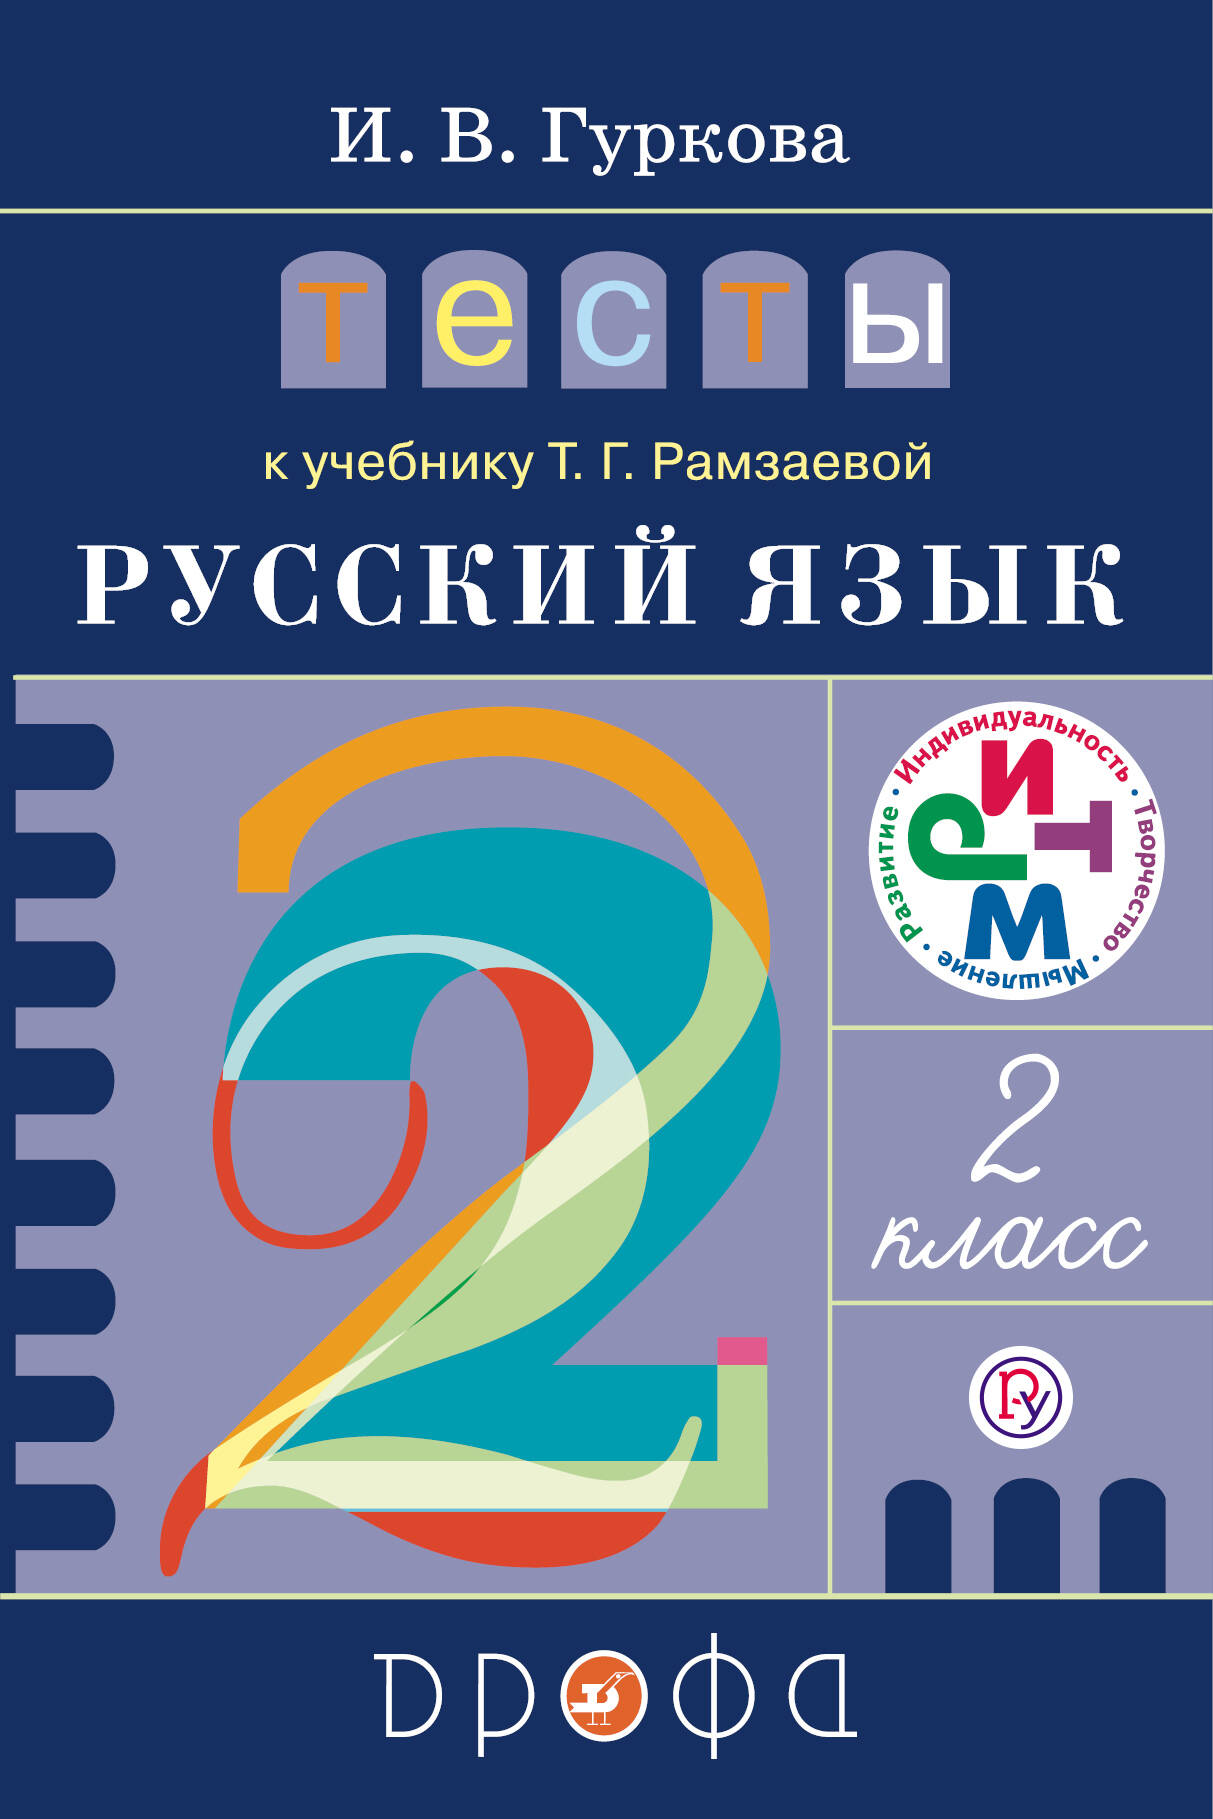 Конспект урока русского языка во 2 классе по фгос составляем и пишем диктанты